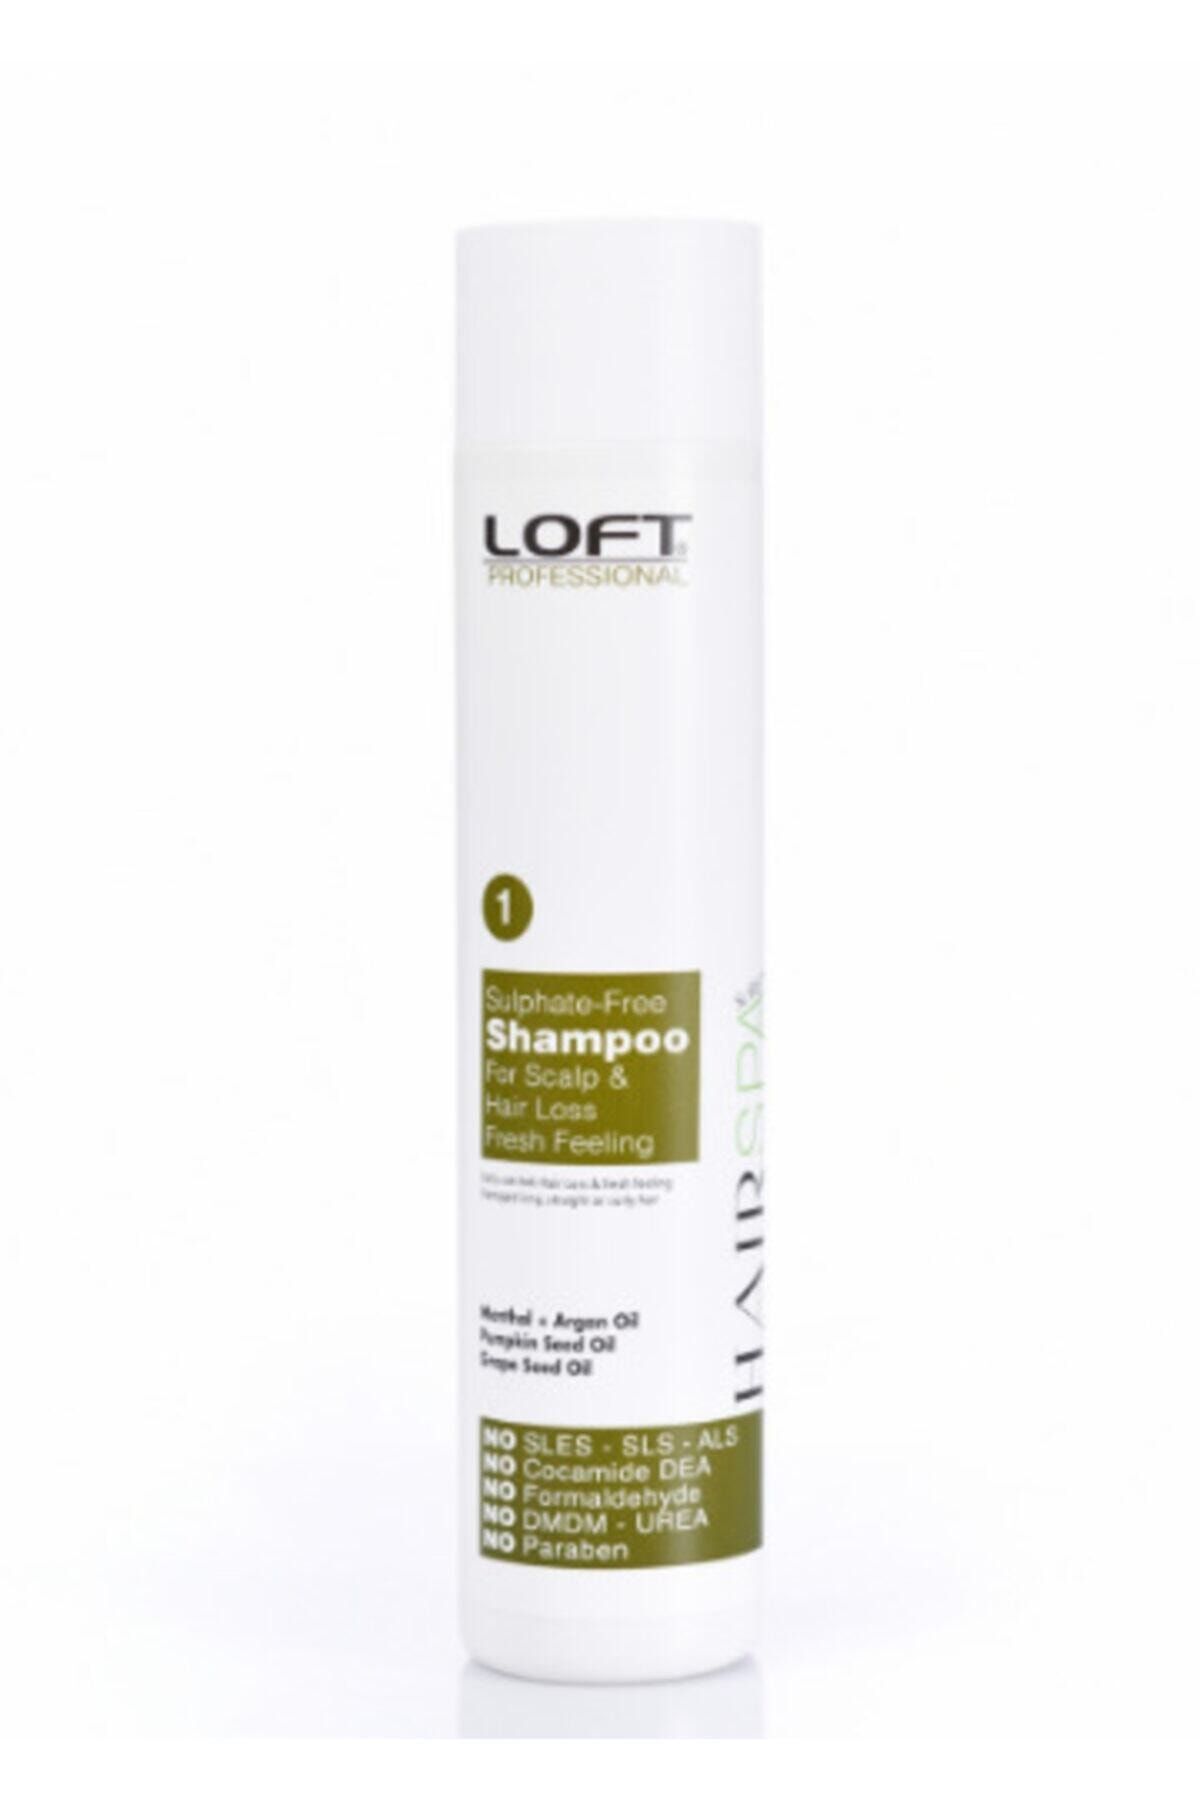 Loft Sülfatsız Dökülme Karşıtı + Tonik Etkili Şampuan 300 Ml